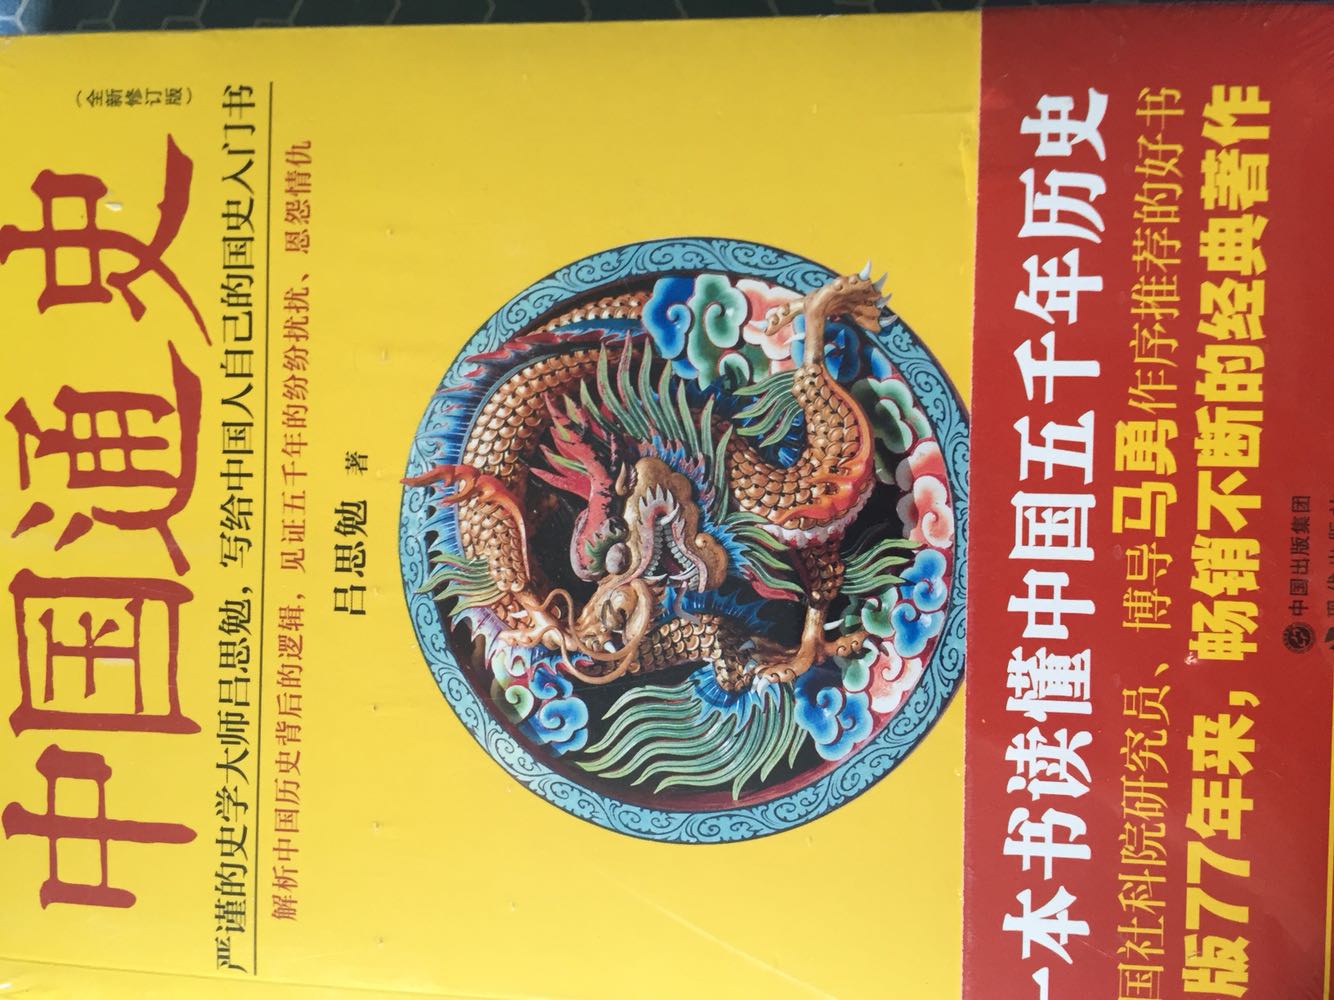 读史可以明智，以史为鉴！包装很精美，中国通史，值得收藏！